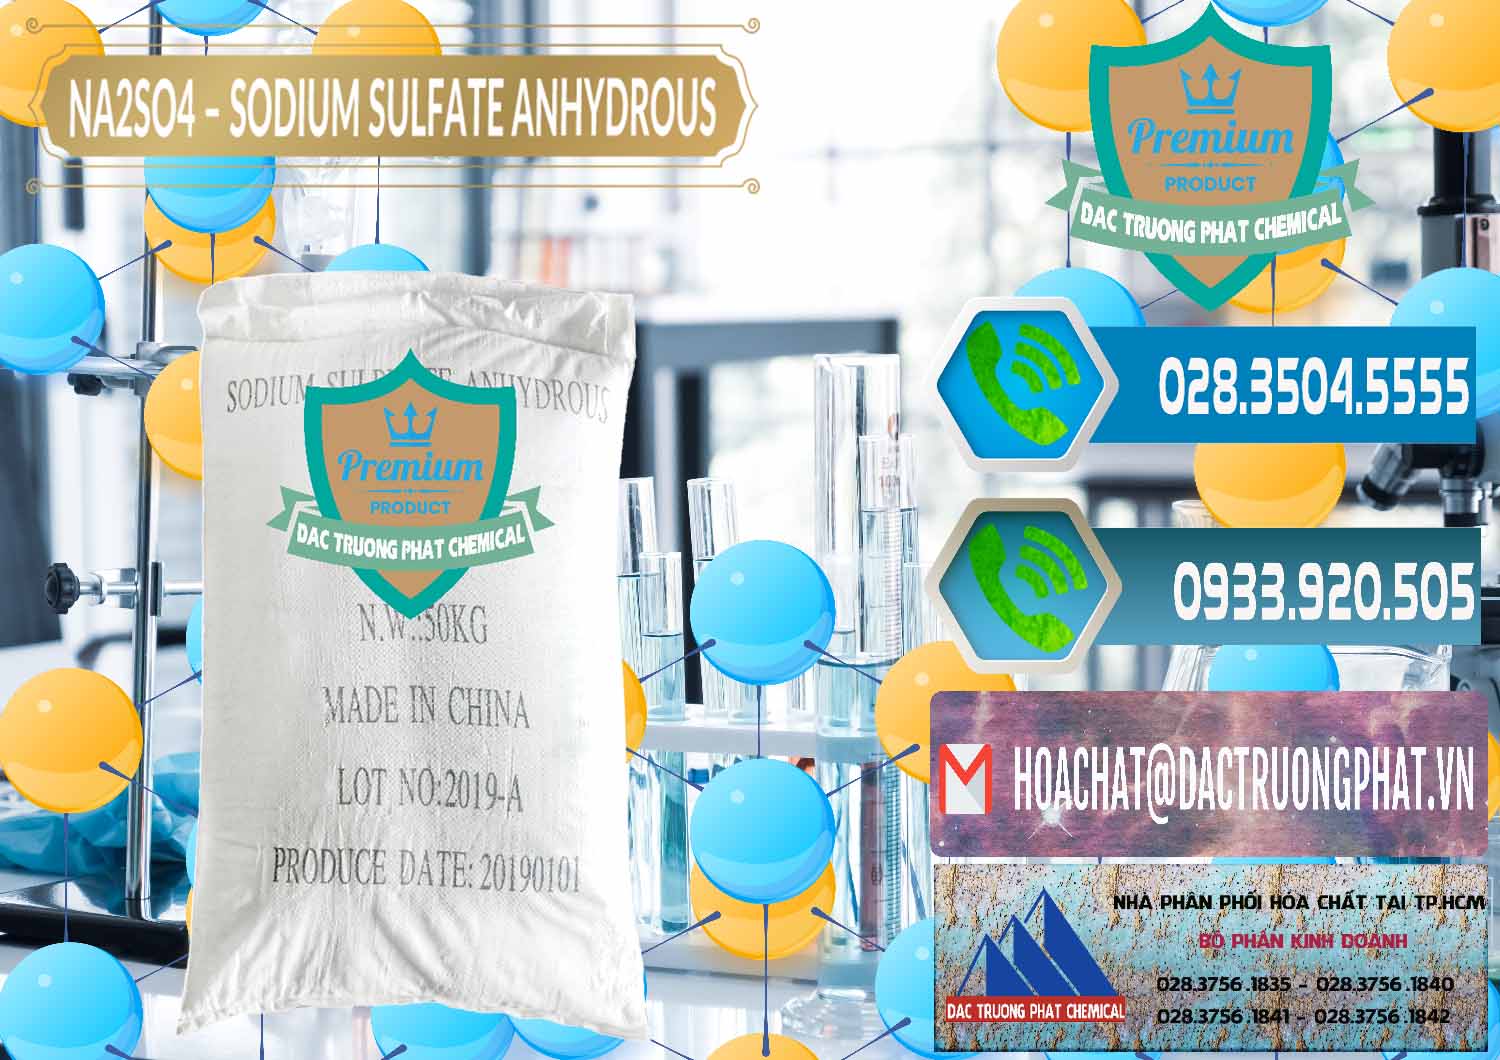 Cty chuyên bán & phân phối Sodium Sulphate - Muối Sunfat Na2SO4 PH 6-8 Trung Quốc China - 0099 - Công ty chuyên phân phối và bán hóa chất tại TP.HCM - congtyhoachat.net